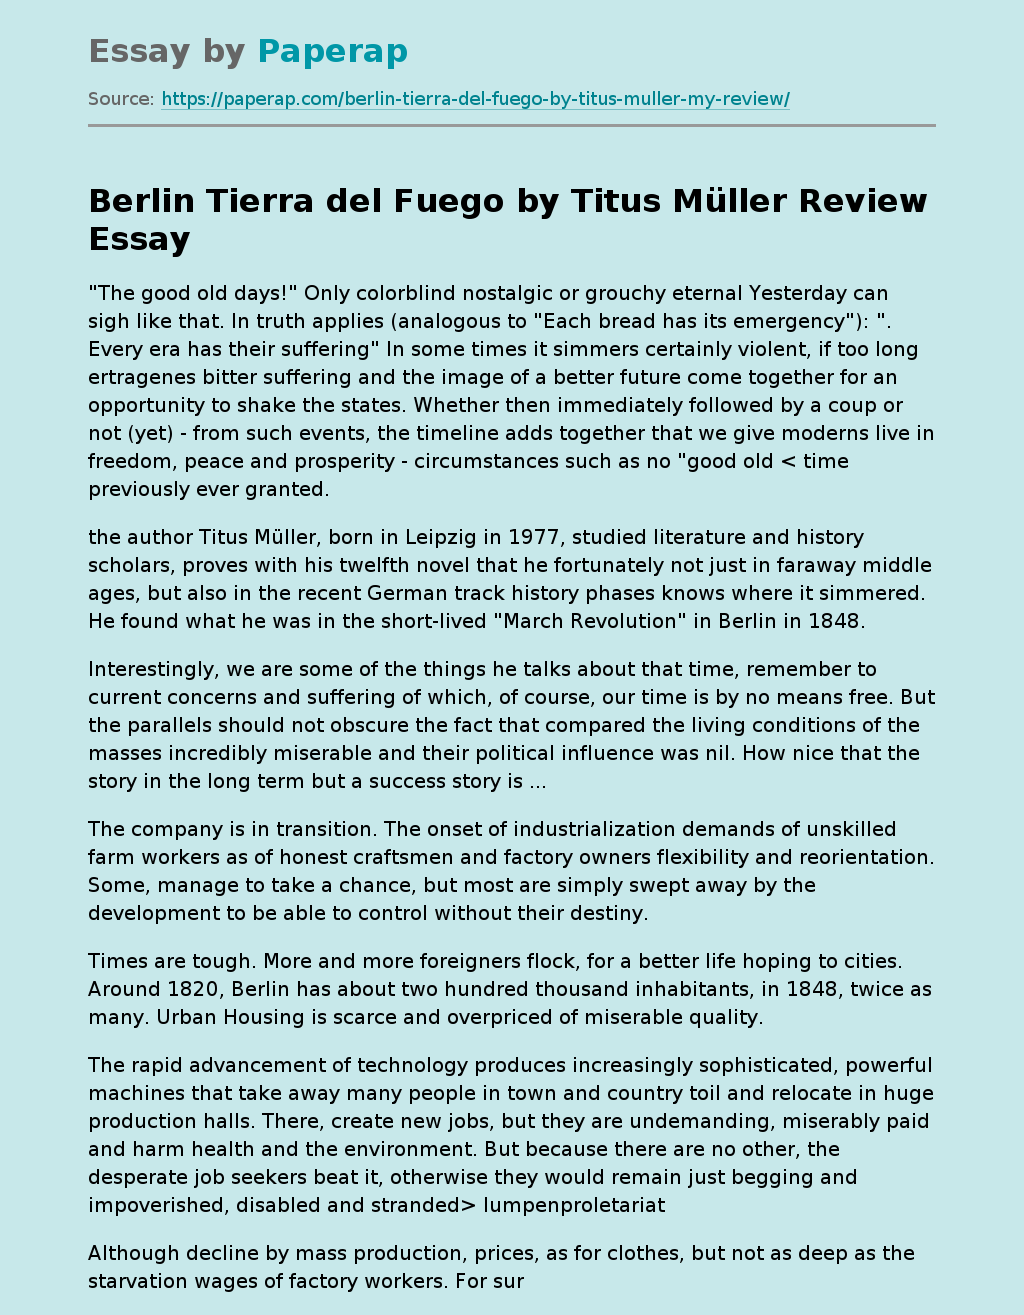 "Berlin Tierra del Fuego" by Titus Müller Review